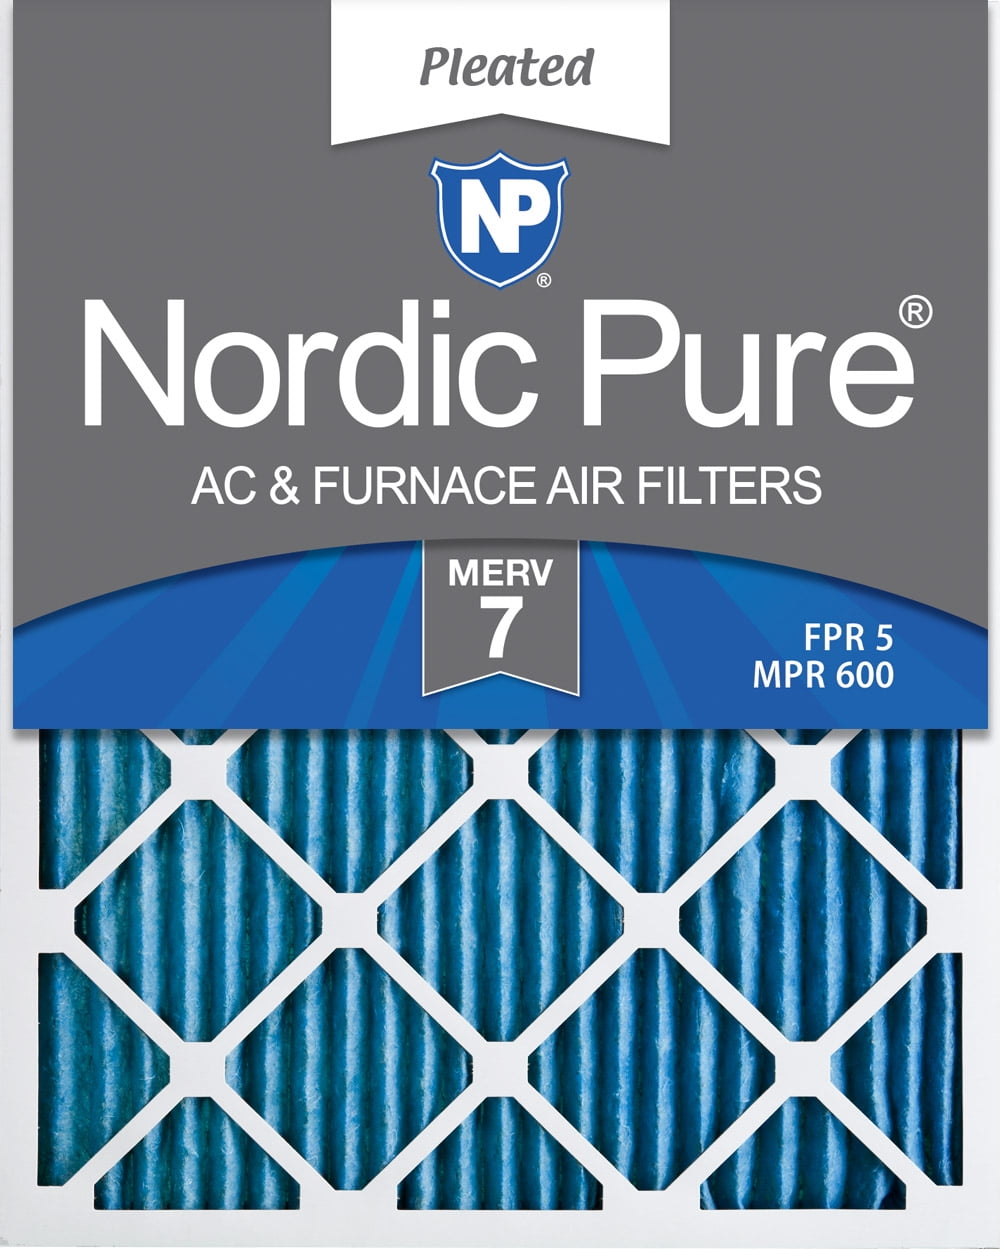 Nordic Pure 10x20x1 MERV 13 Tru Mini Pleat AC Furnace Air Filters 2 Pack 